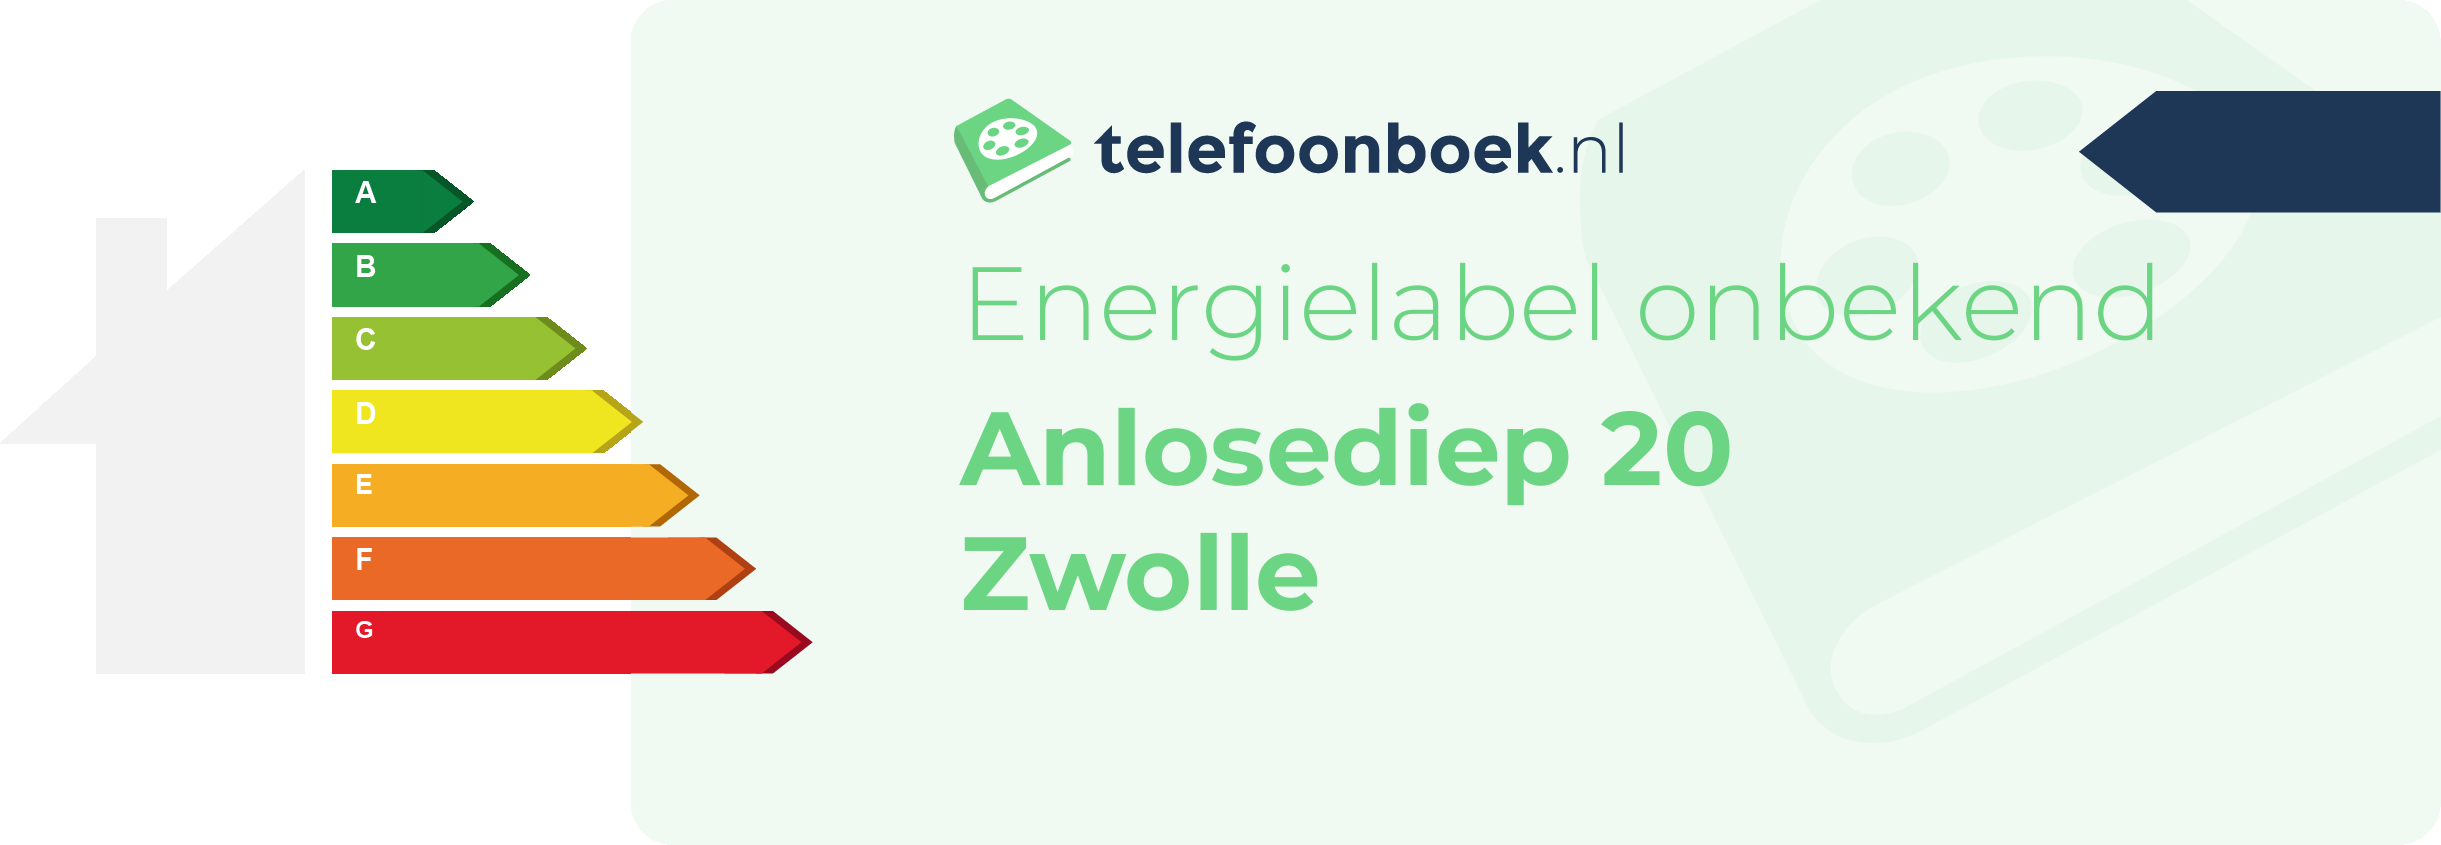 Energielabel Anlosediep 20 Zwolle